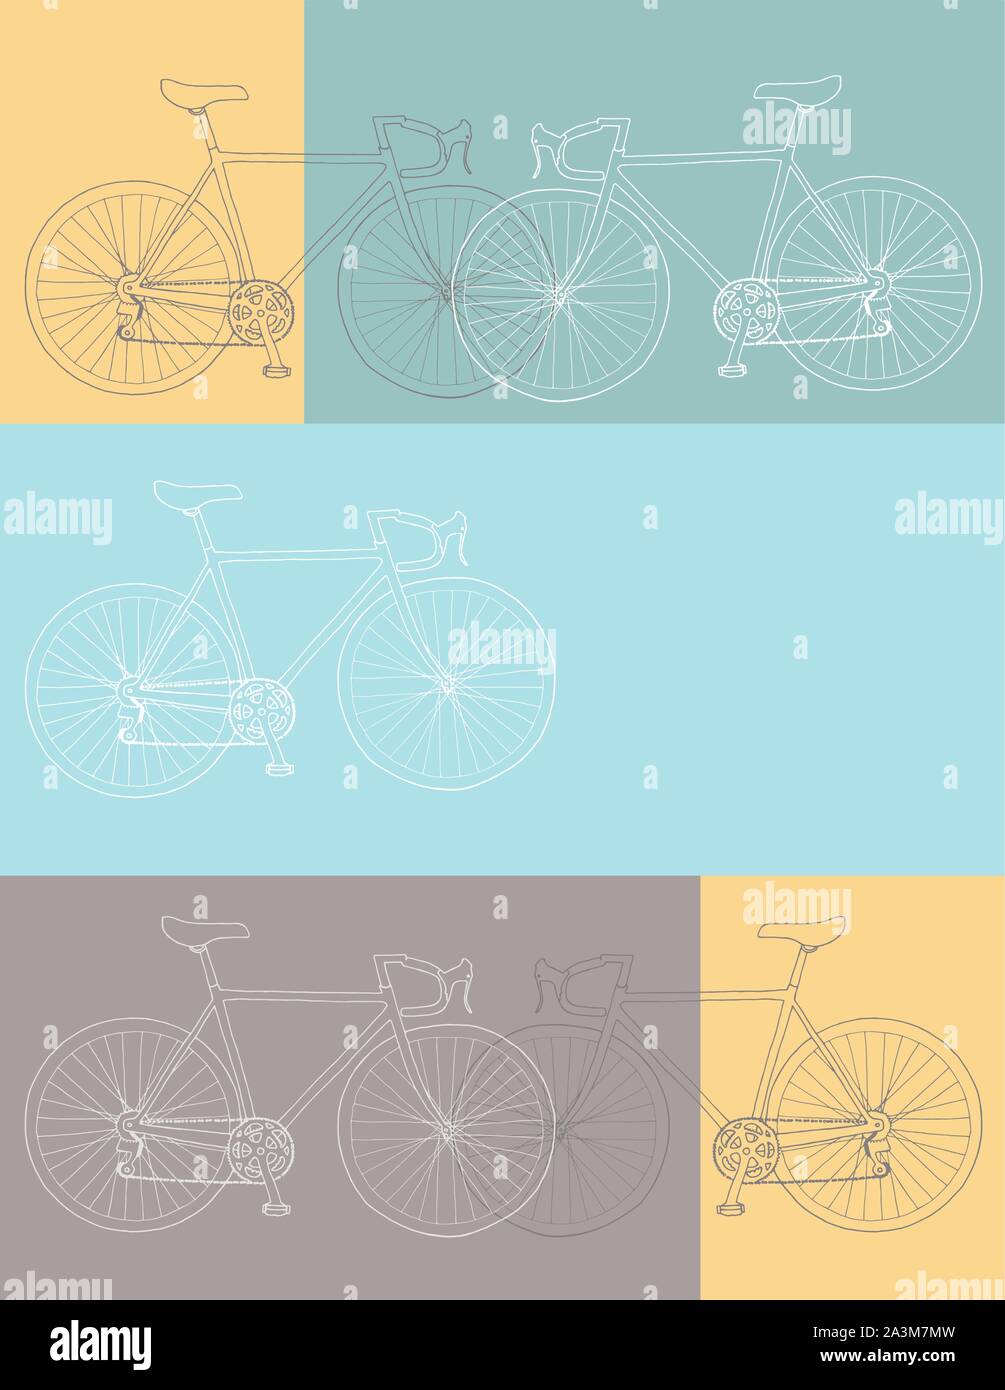 8,5 x 11, Hand gezeichnet Fahrrad Einladung/Danke/Ereignis vector Karte Abbildung: Vorlage in gelb, grau und blau Farben Palette Stock Vektor